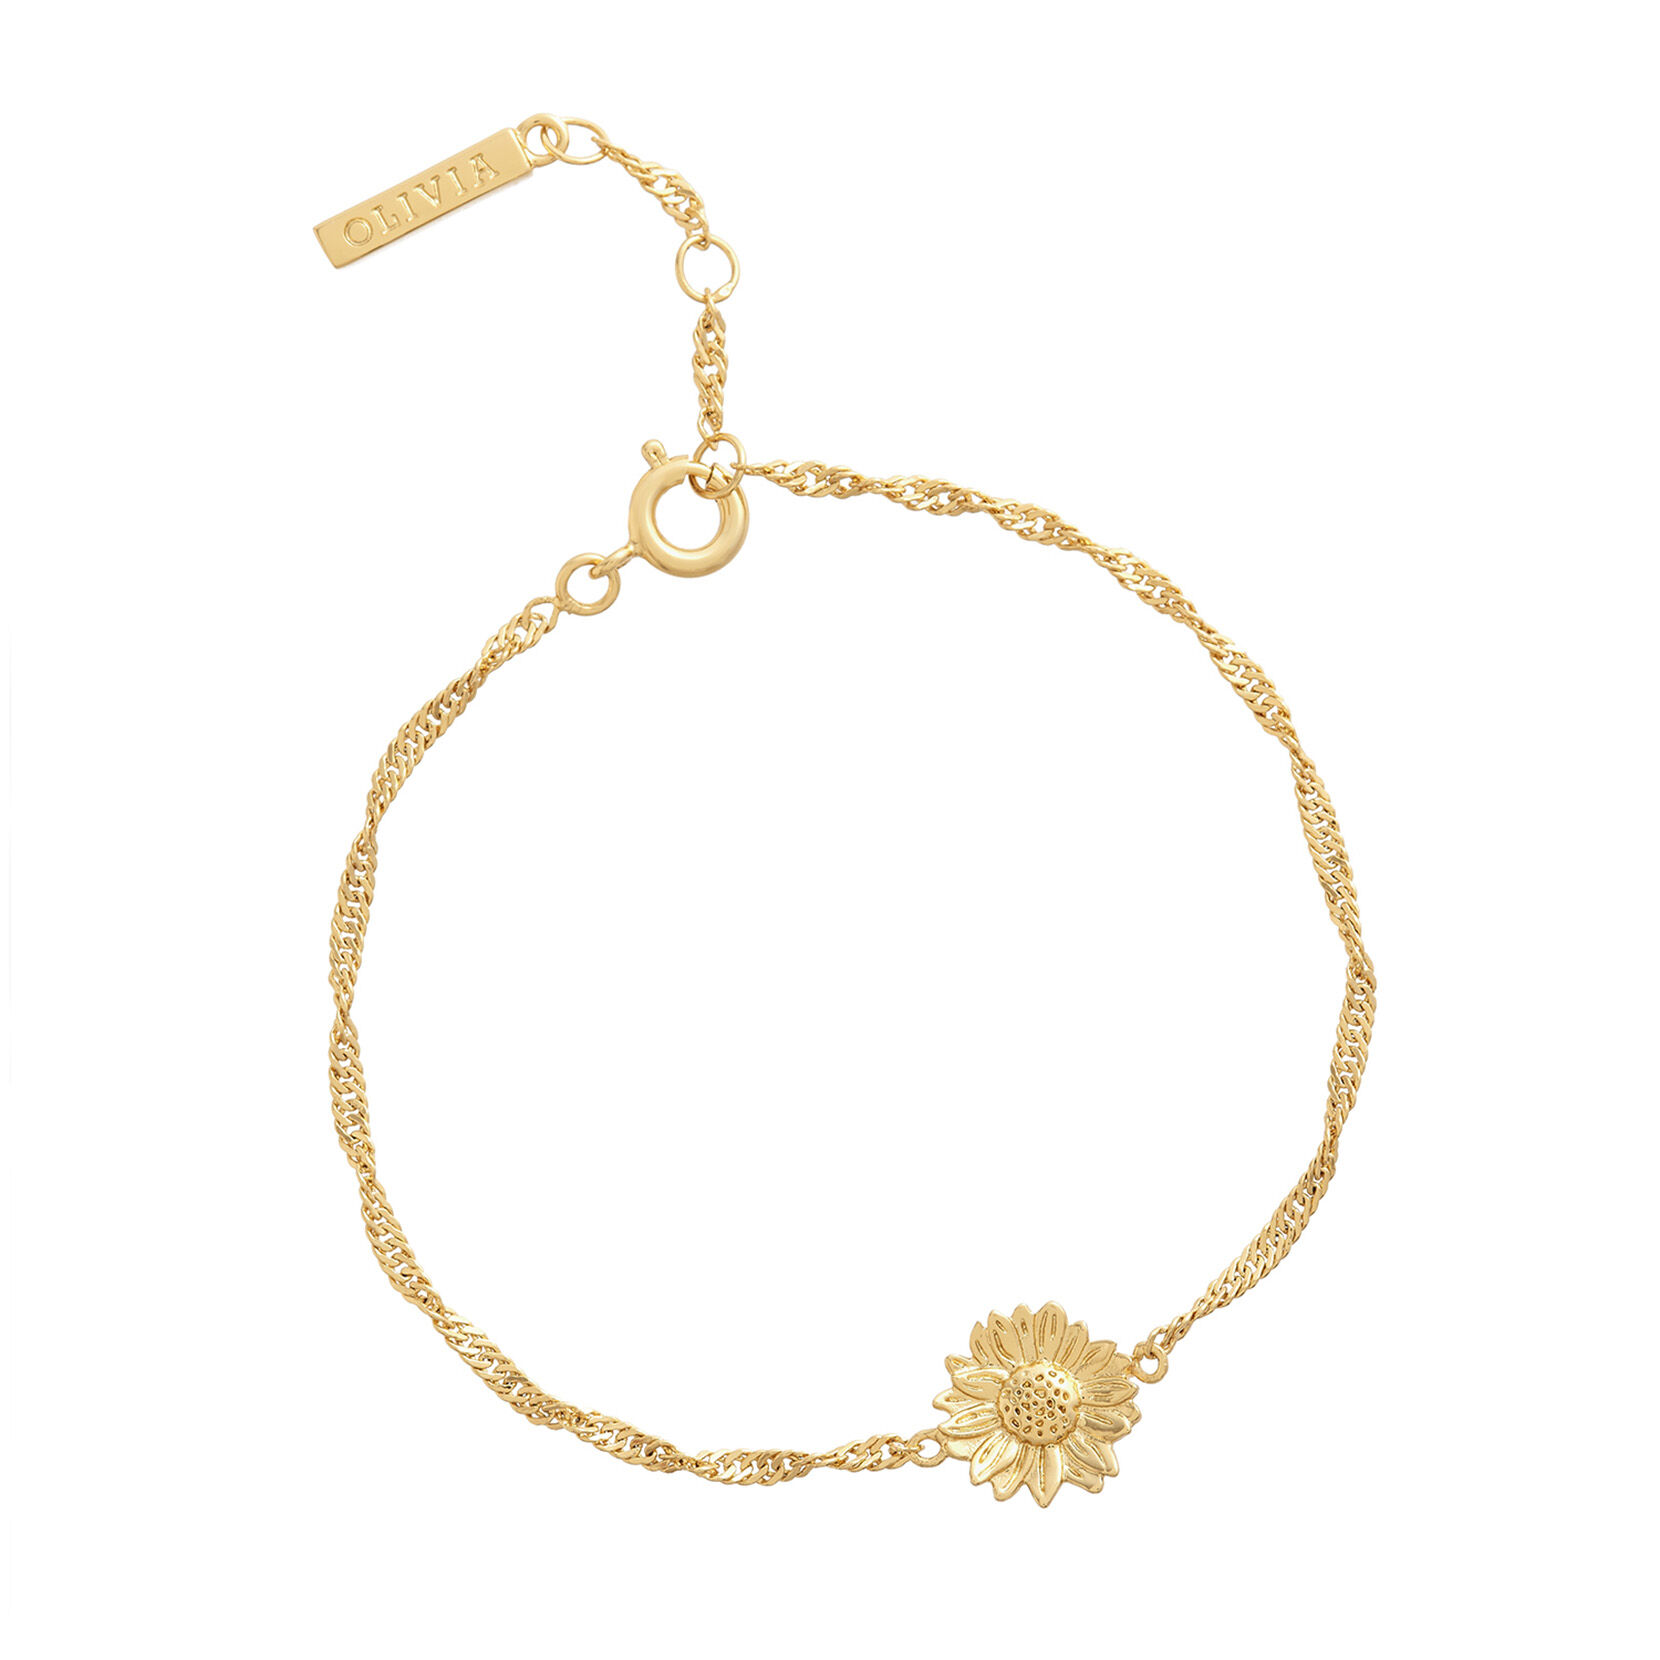 34mm White & Gold Mesh Watch & Sunflower Bracelet Gift Set